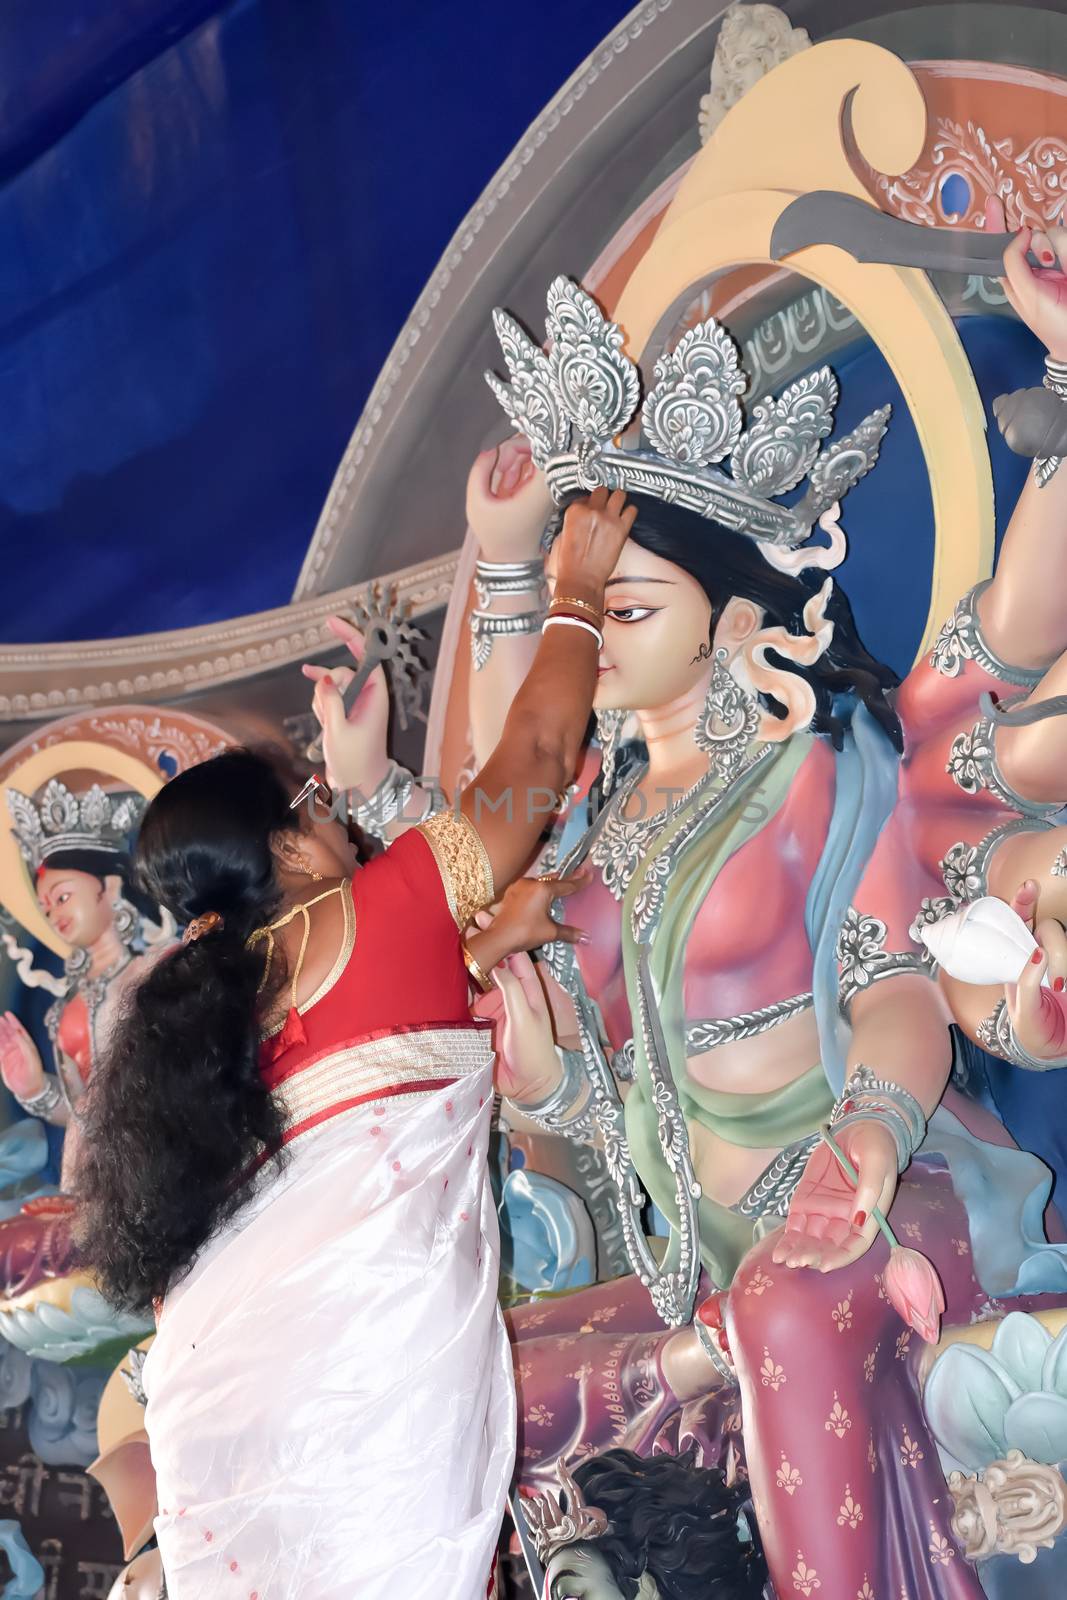 Kolkata October 2019 - Maa Durga Debi boron is done by a Hindu devotee at Vijaya Dashami, the last day of Durga puja Festival. Sindoor Khela is a bidding adieu ritual to bid farewell to the deity.